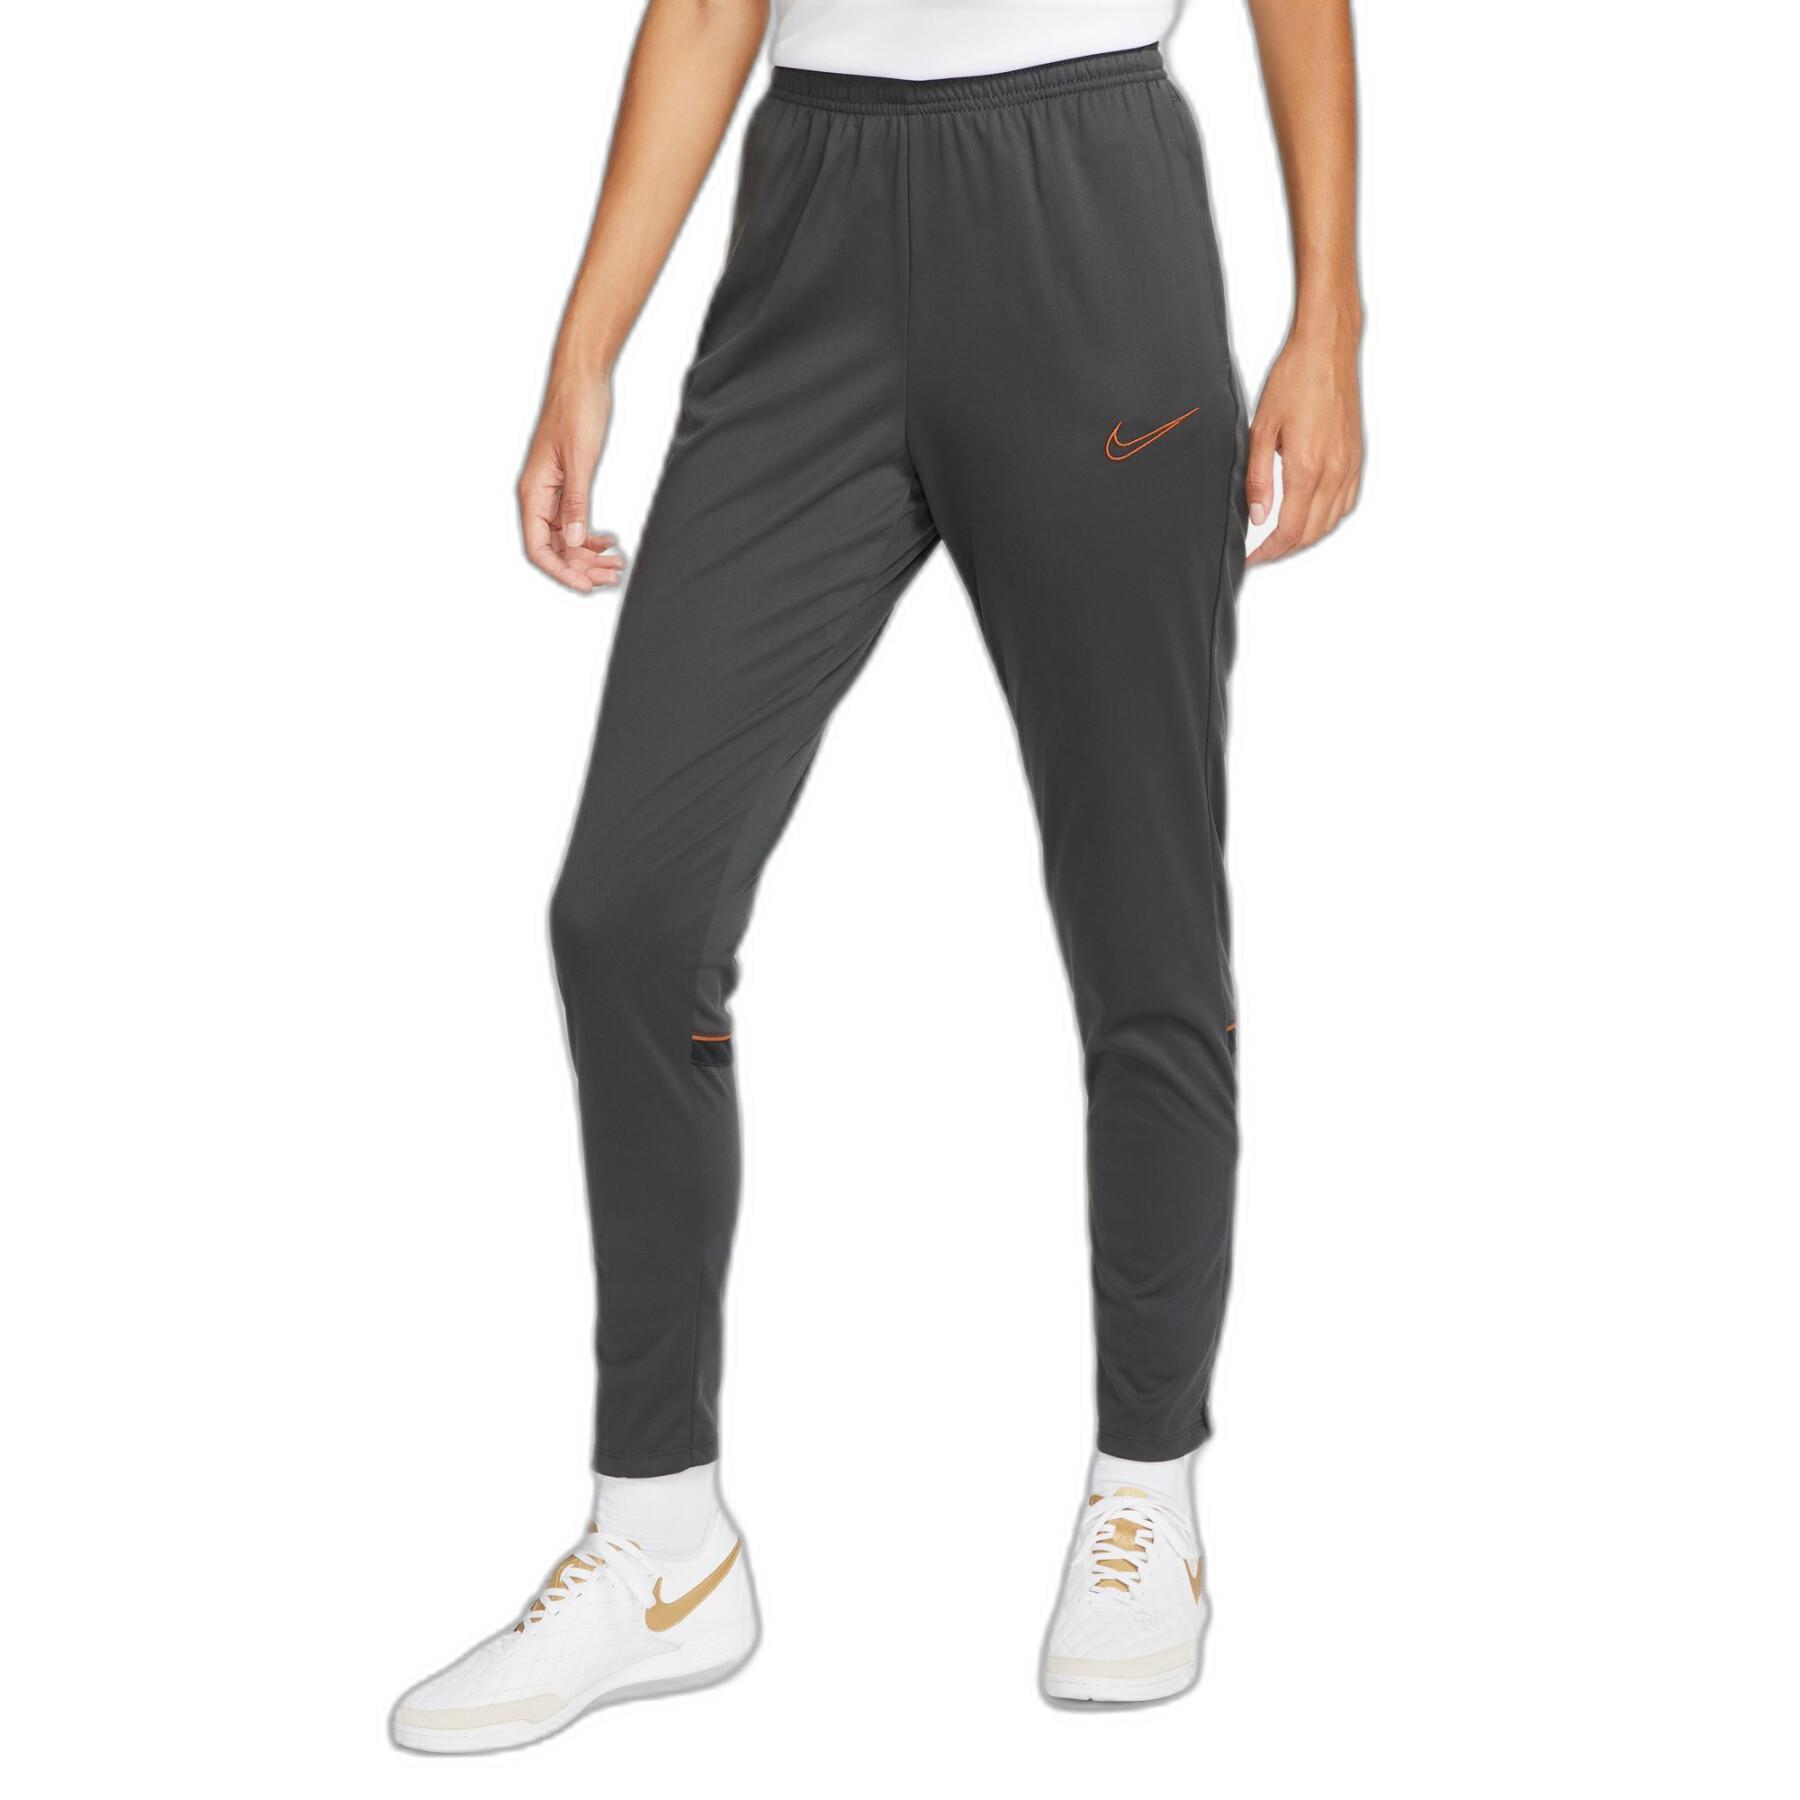 Women's Sweatpants suit Nike Dri-Fit Academy